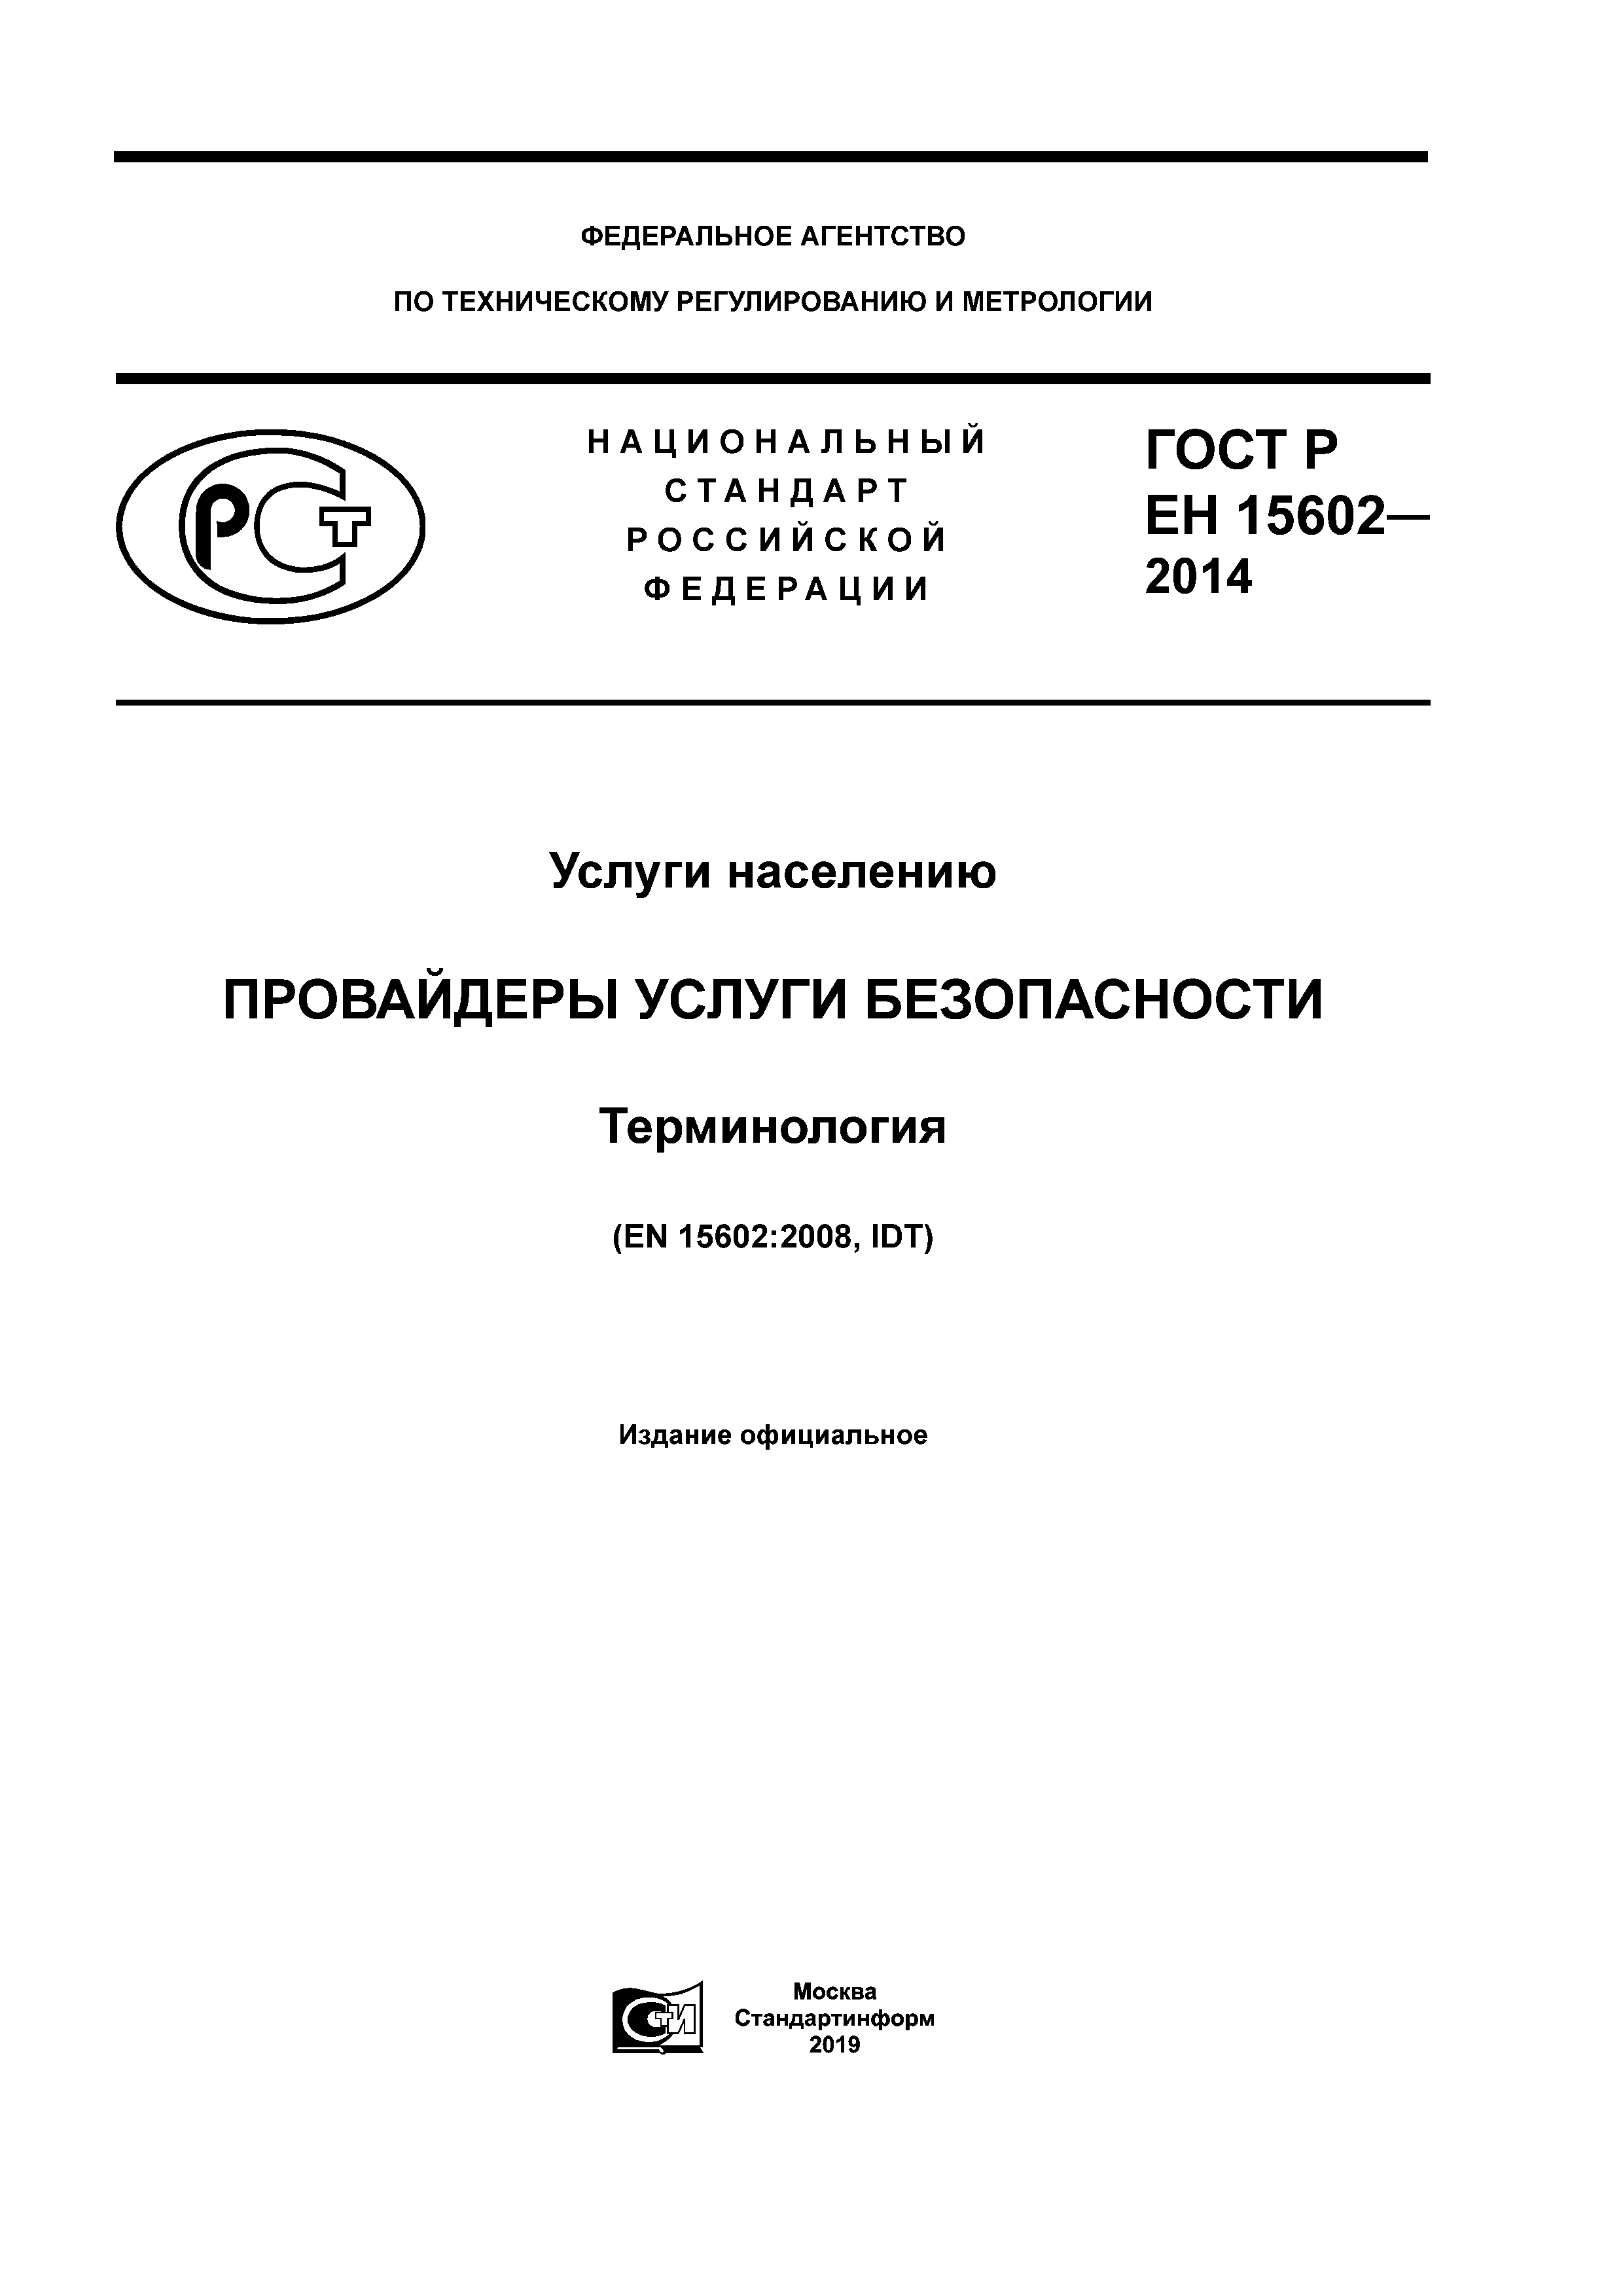 ГОСТ Р ЕН 15602-2014